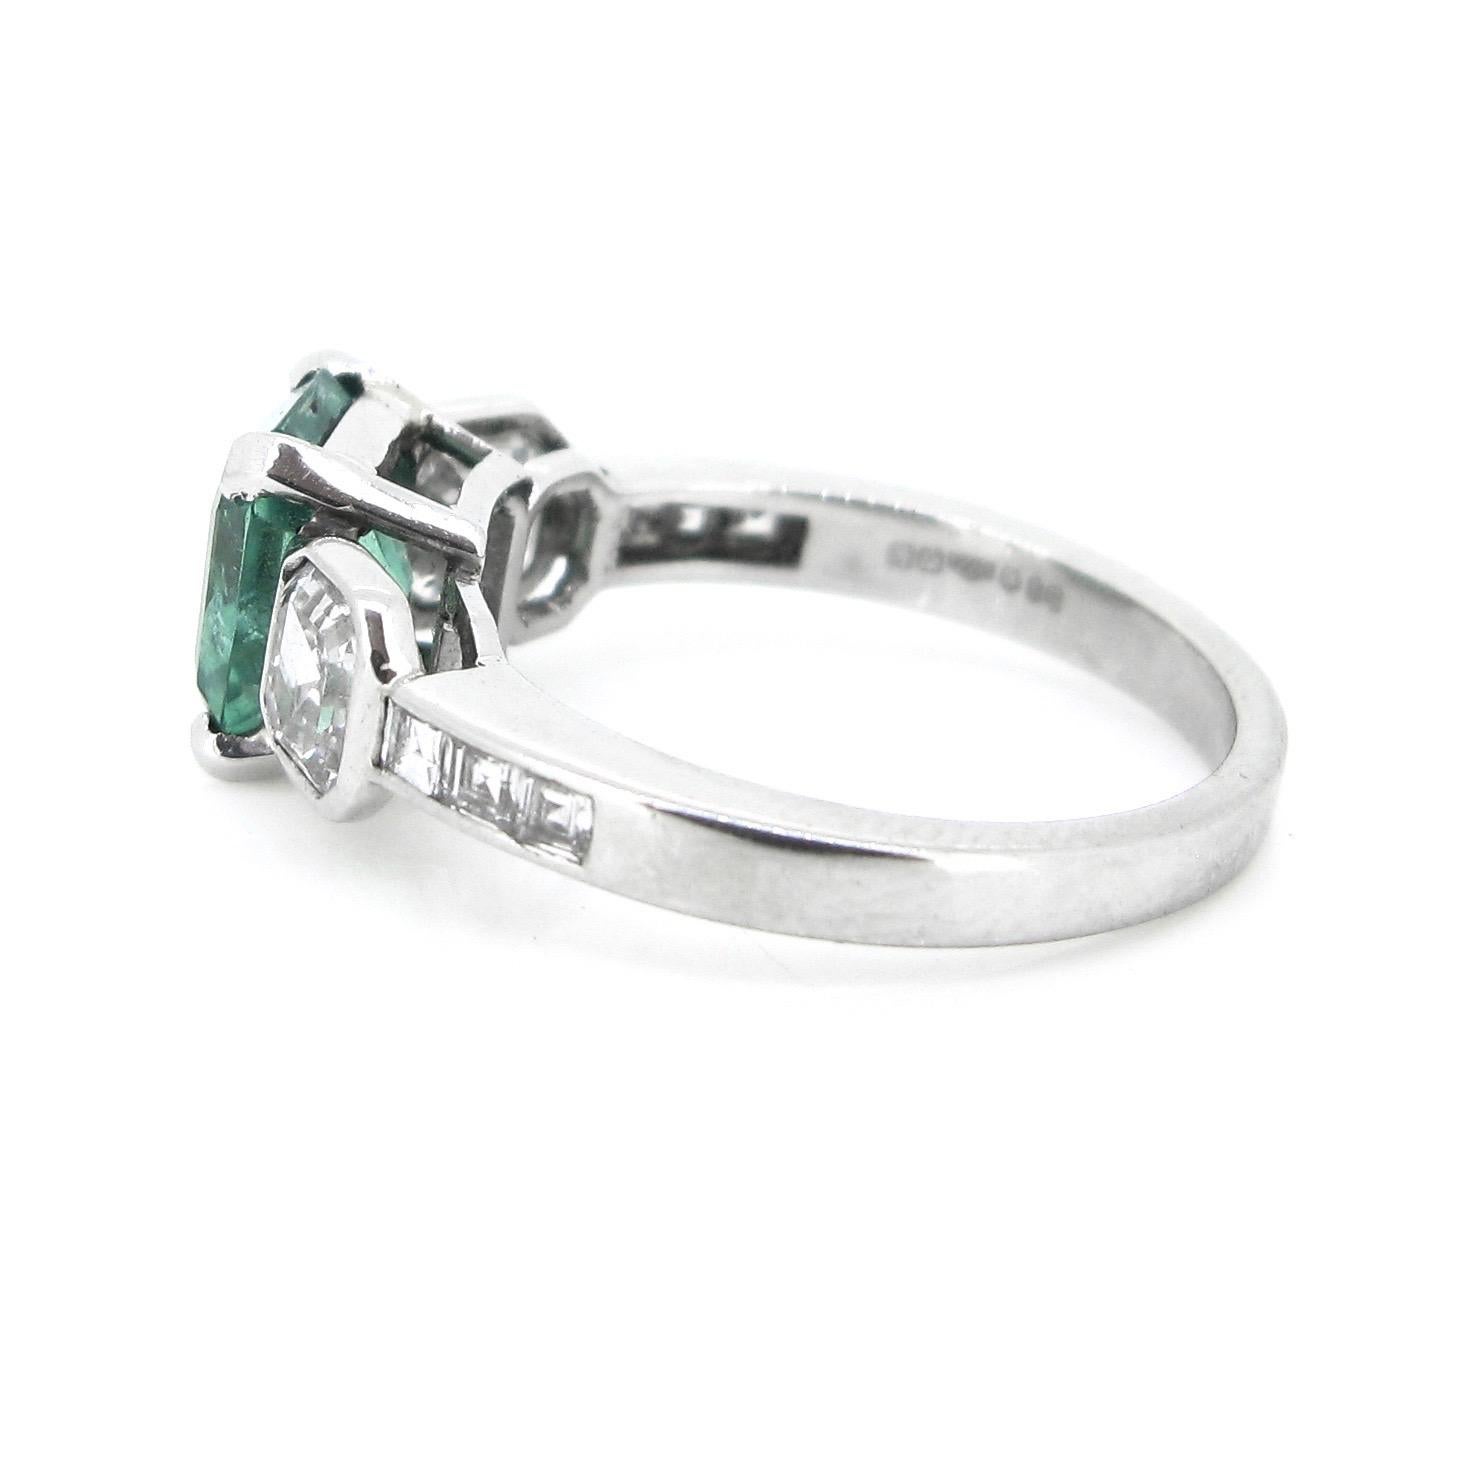 Emerald Cut Colombian Emerald Asscher Cut Princess Cut Diamonds Platinum Engagement Ring